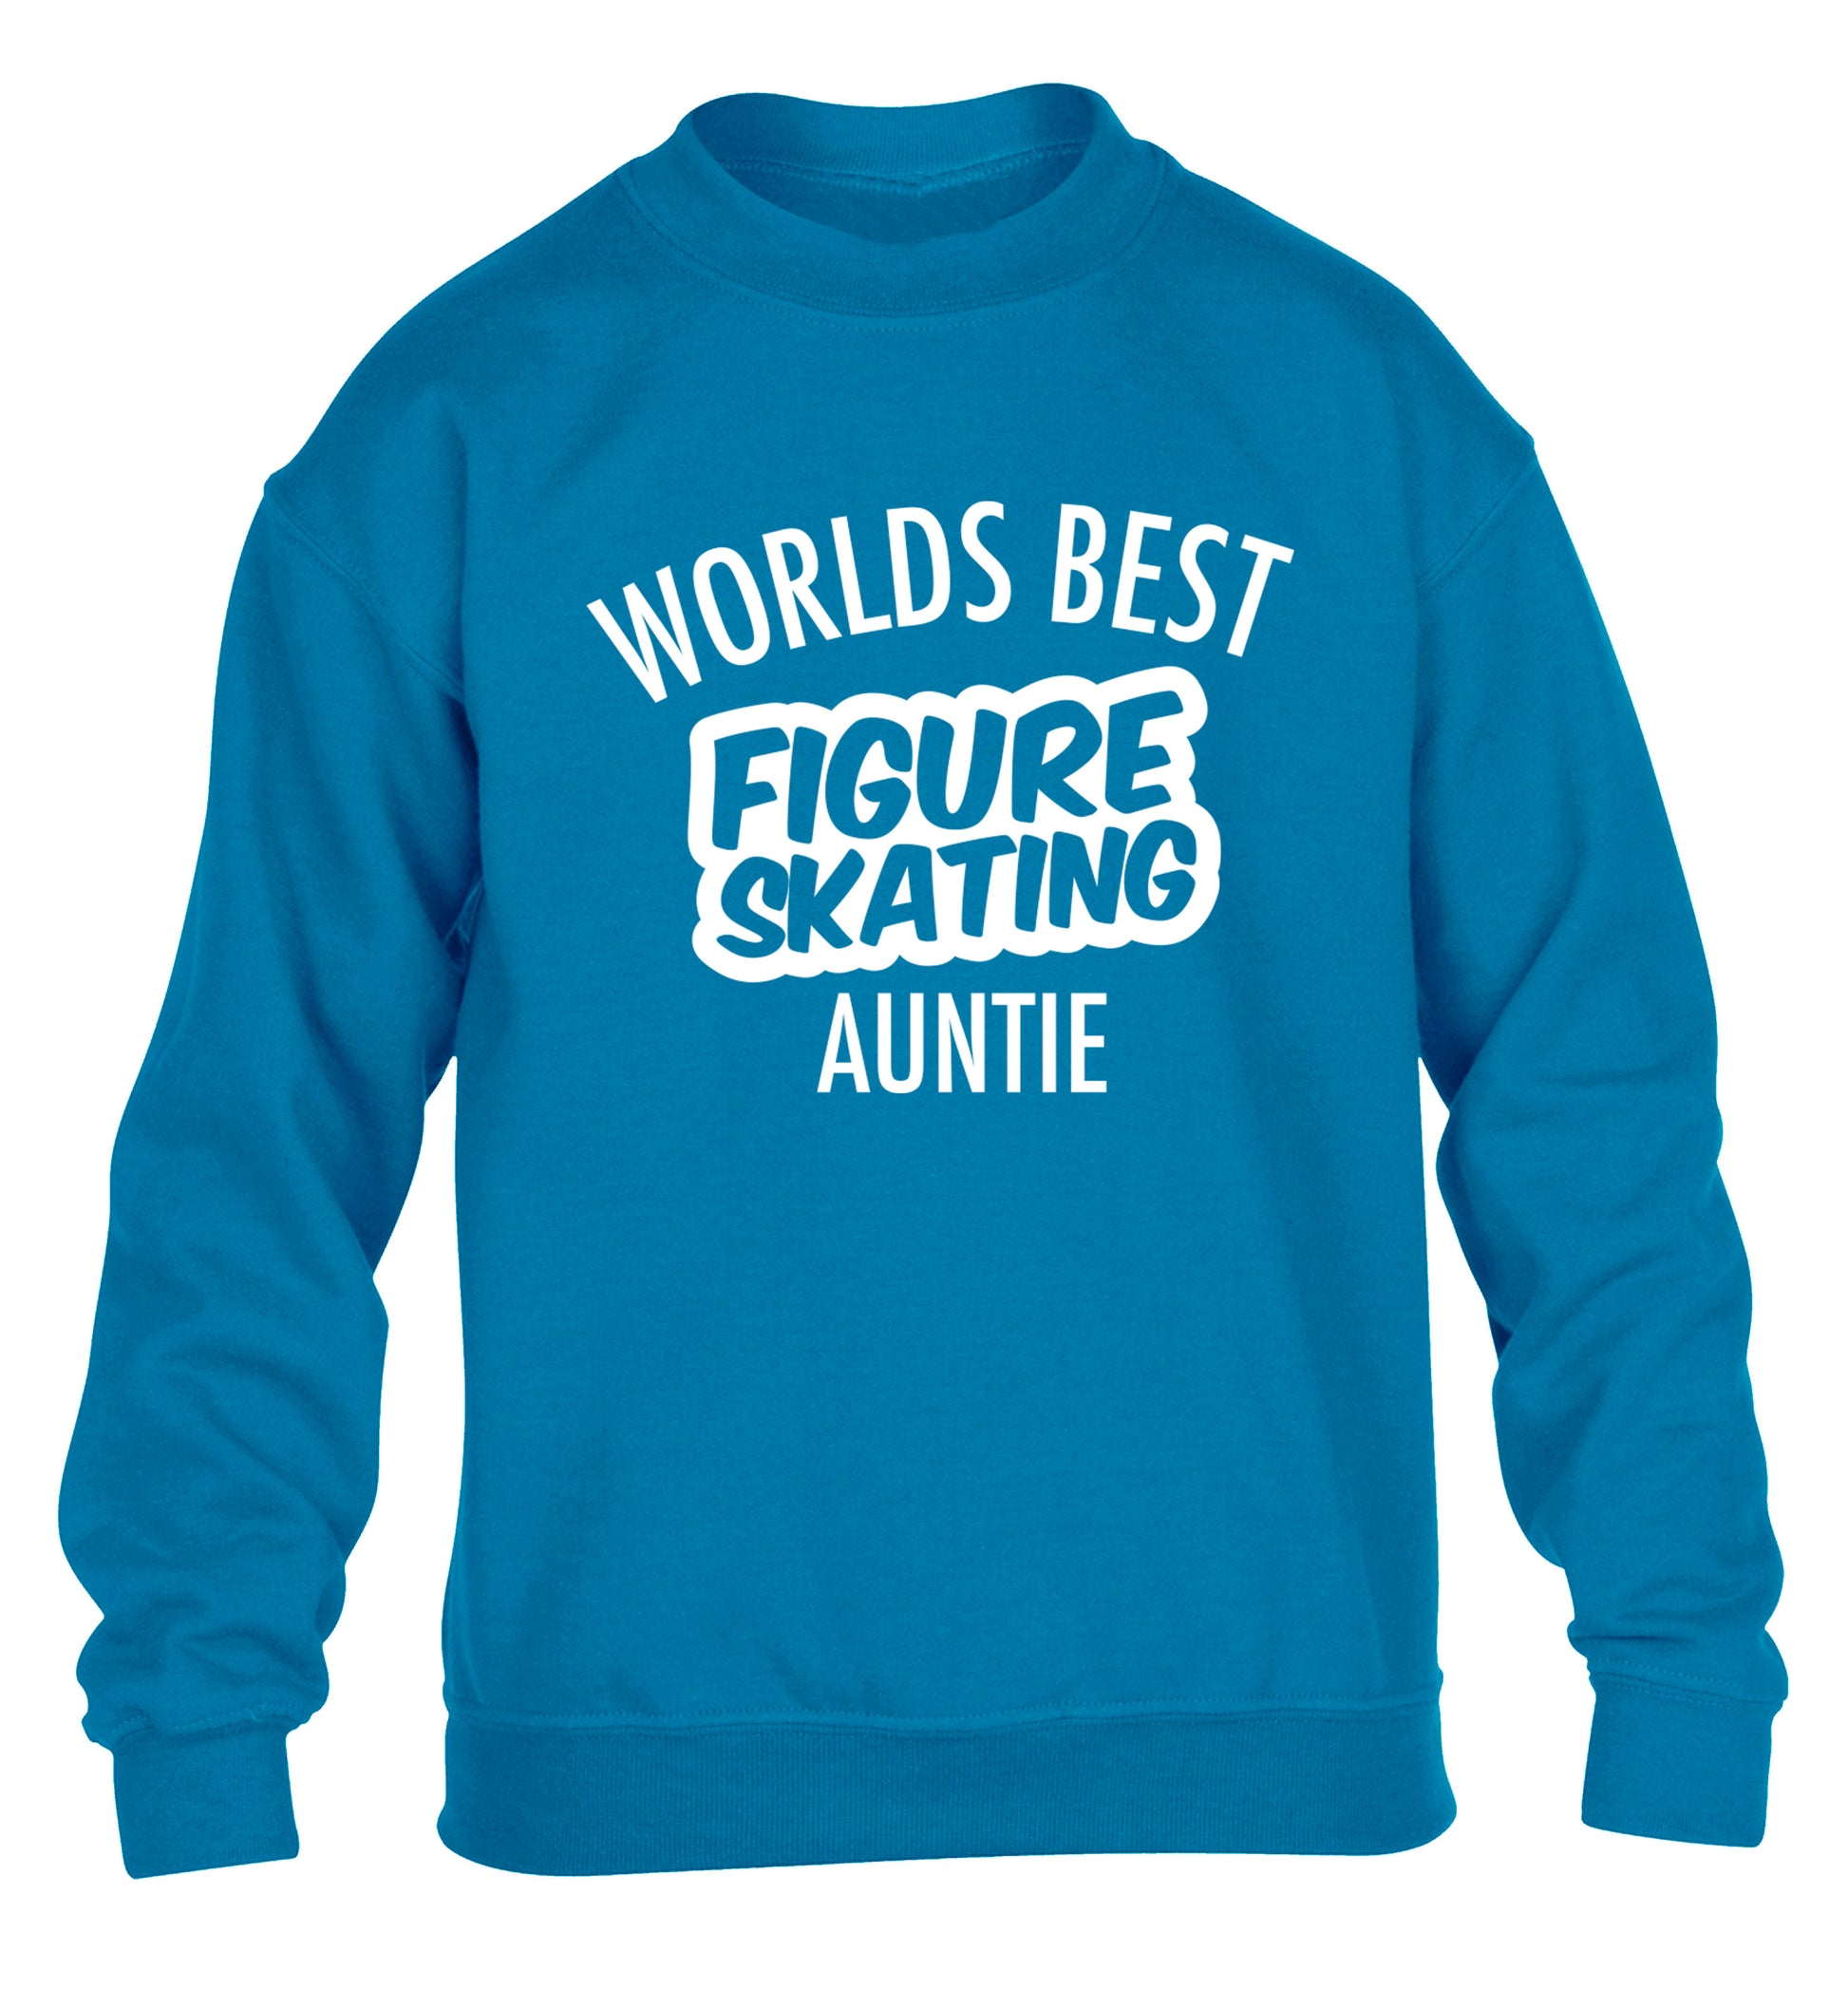 Worlds best figure skating auntie children's blue sweater 12-14 Years